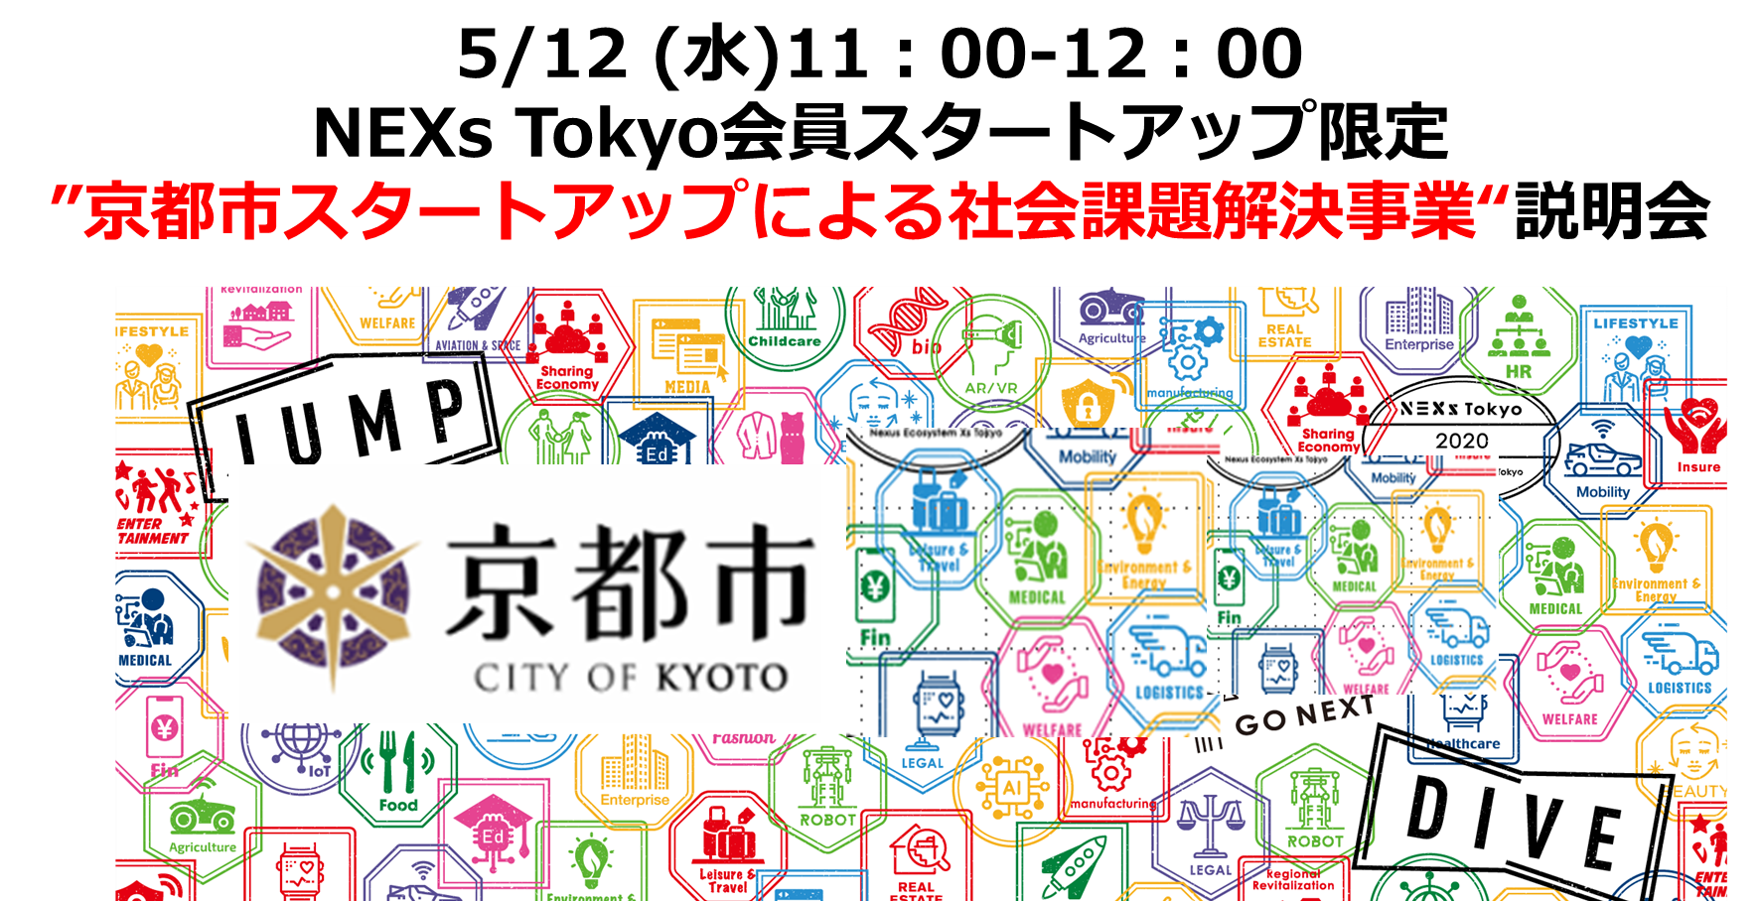 パートナー事業説明会～京都市スタートアップによる社会課題解決事業（補助事業）」事業説明会～